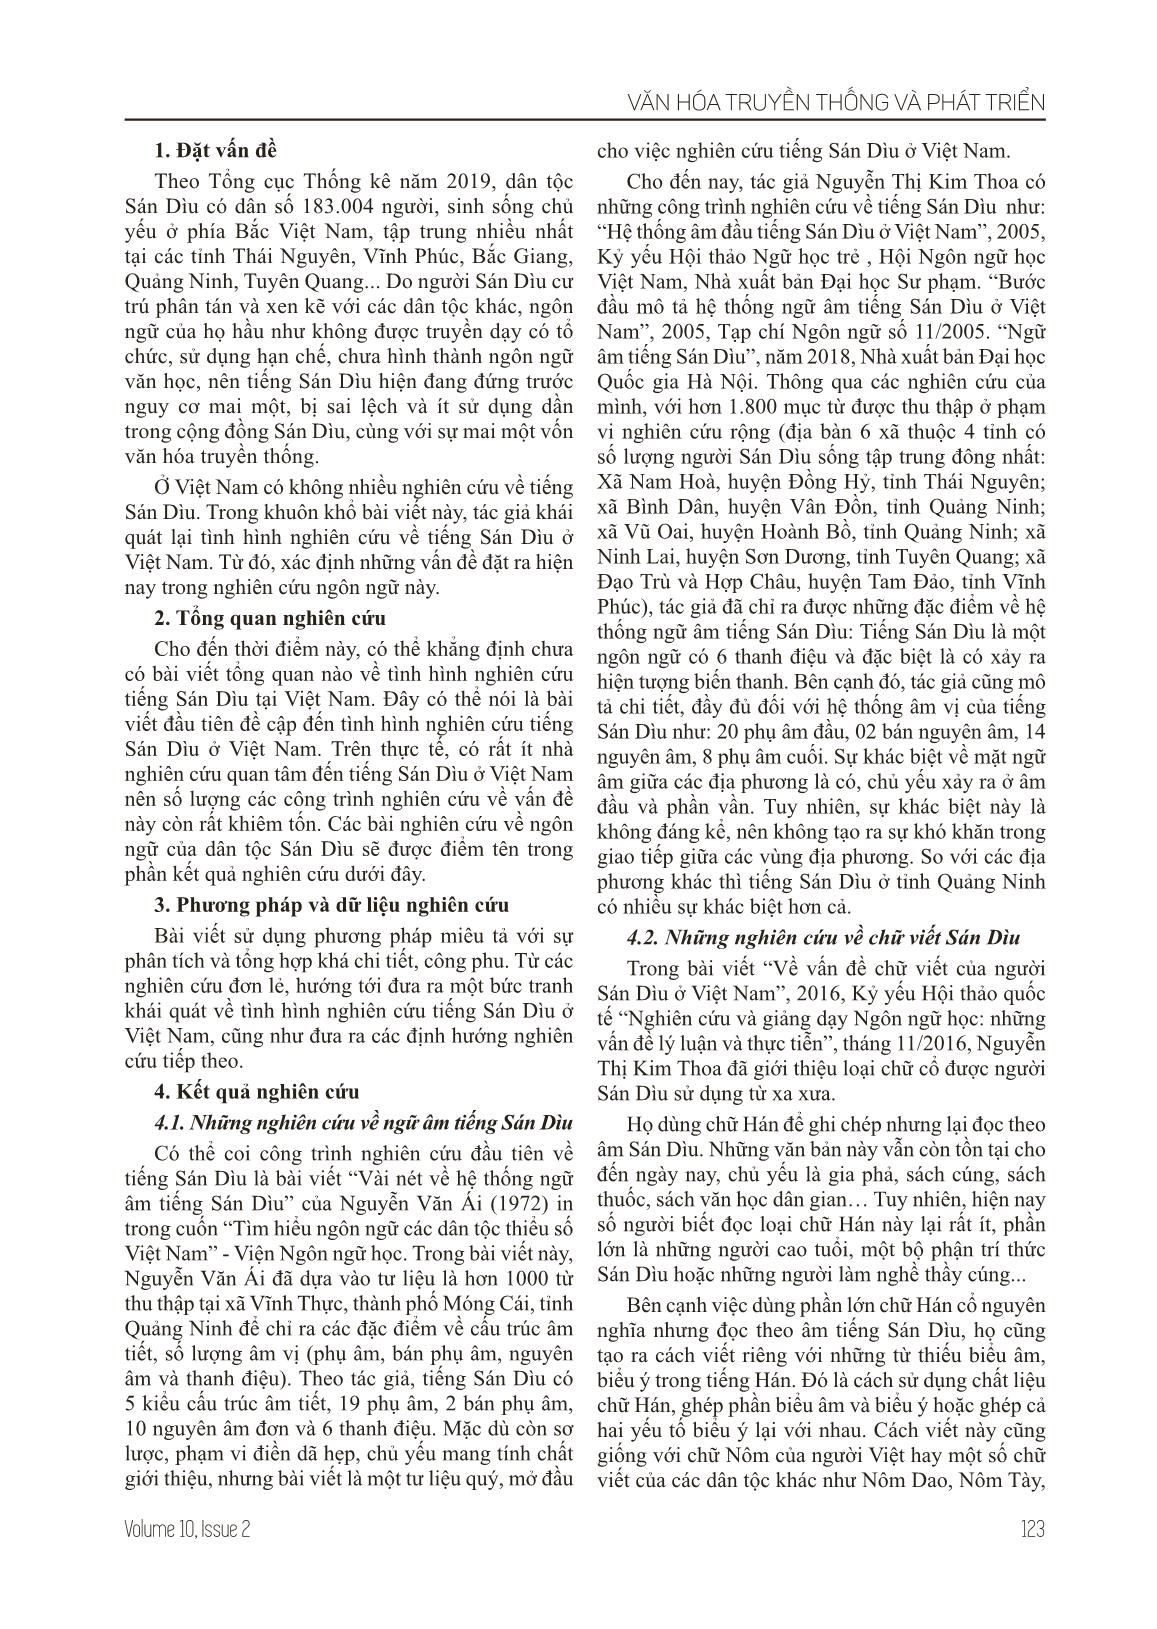 Những vấn đề đặt ra trong nghiên cứu tiếng Sán Dìu ở Việt Nam hiện nay trang 2